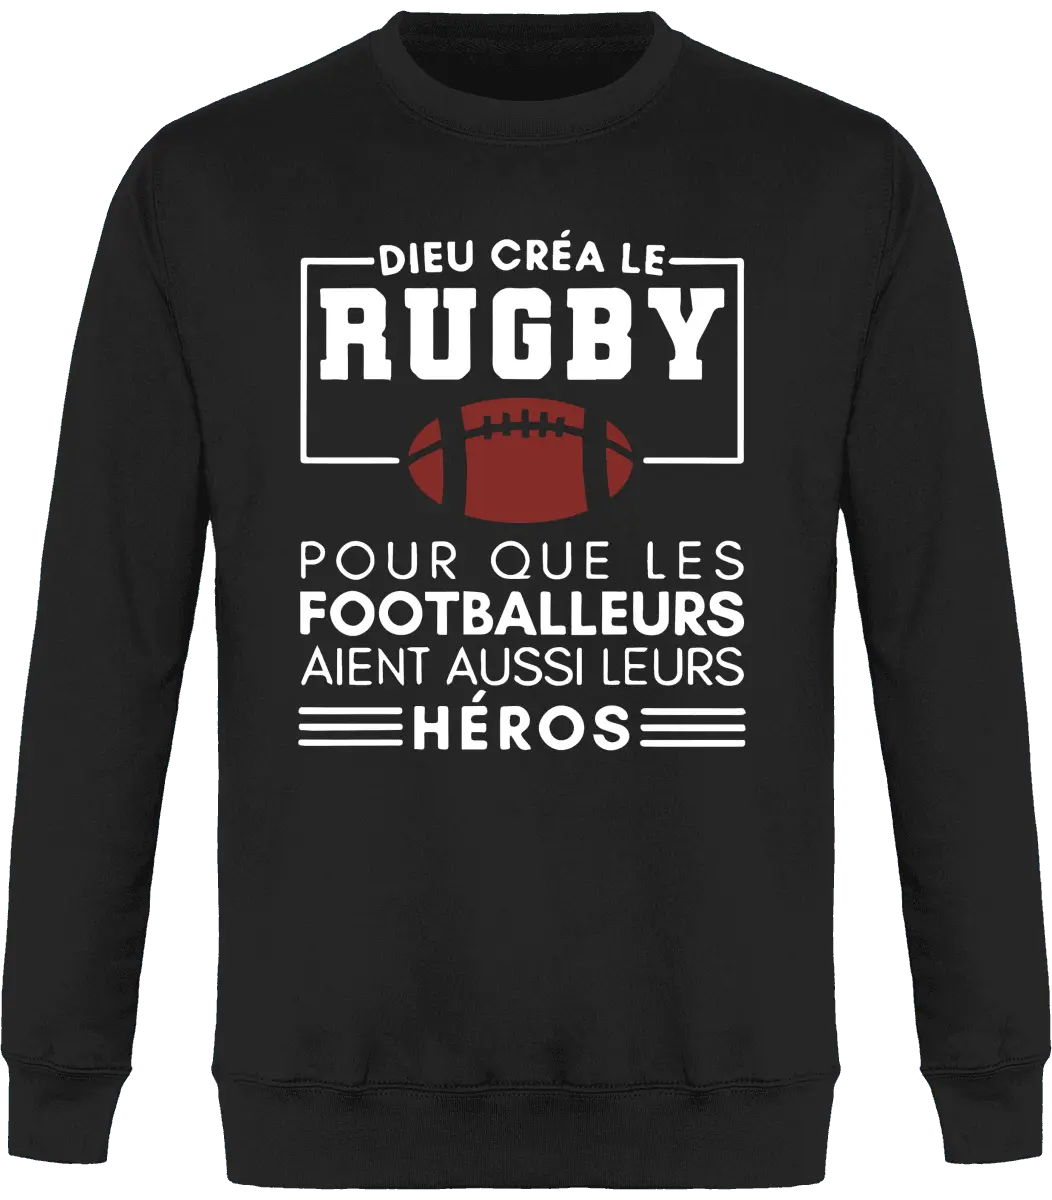 Sweat Rugby "Dieu créa le rugby pour que les footballeurs aient aussi leurs héros" | Mixte - French Humour